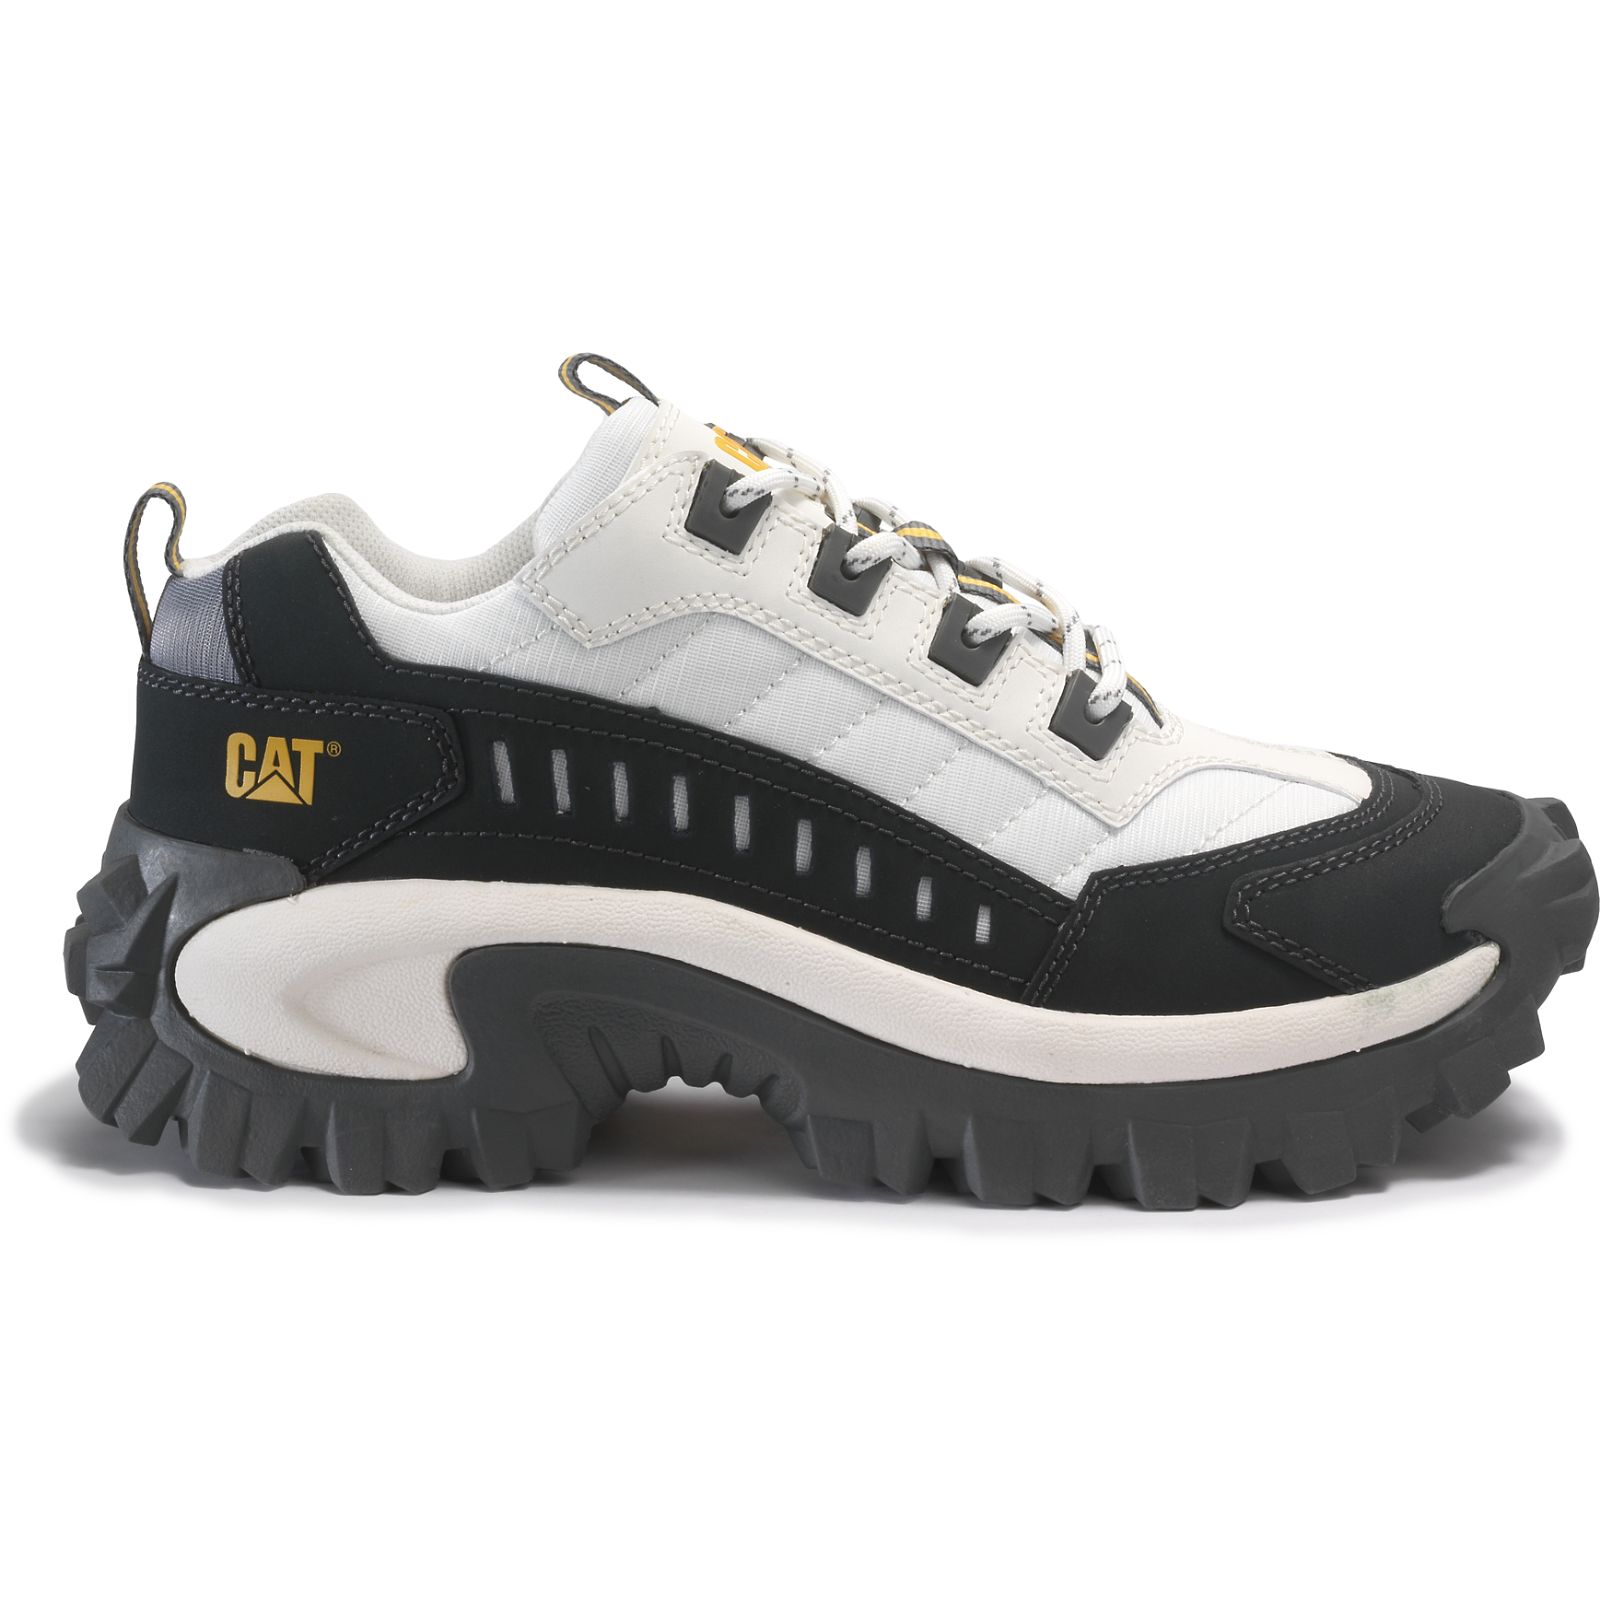 Caterpillar Casual Shoes UAE Online - Caterpillar Intruder Mens - Black TKUMVN801